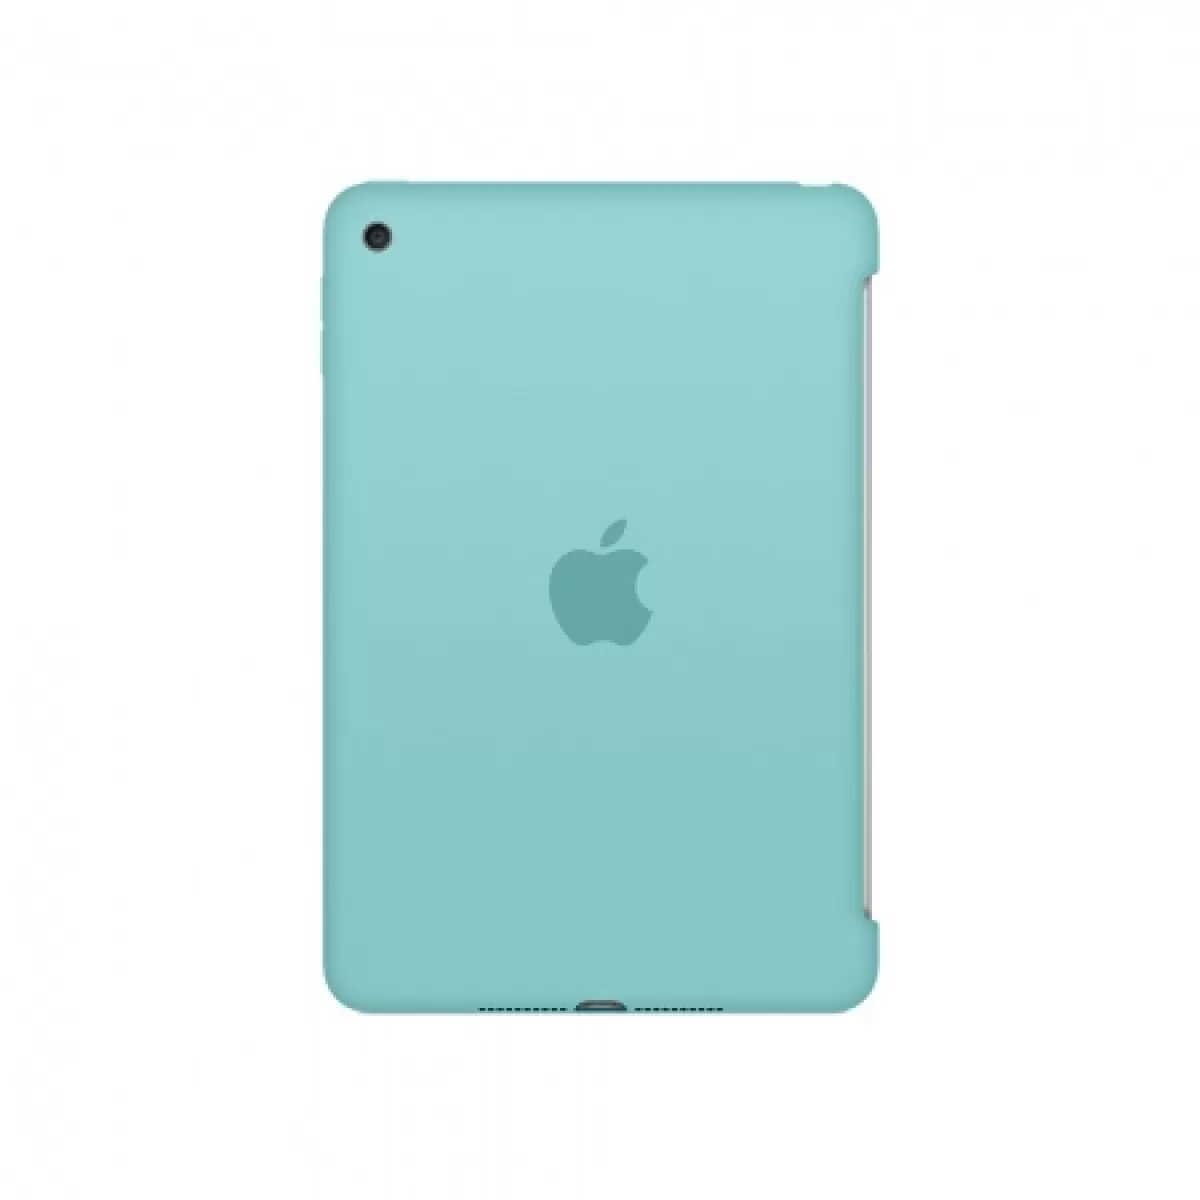 Apple iPad mini 4 Silicone Case Sea Blue